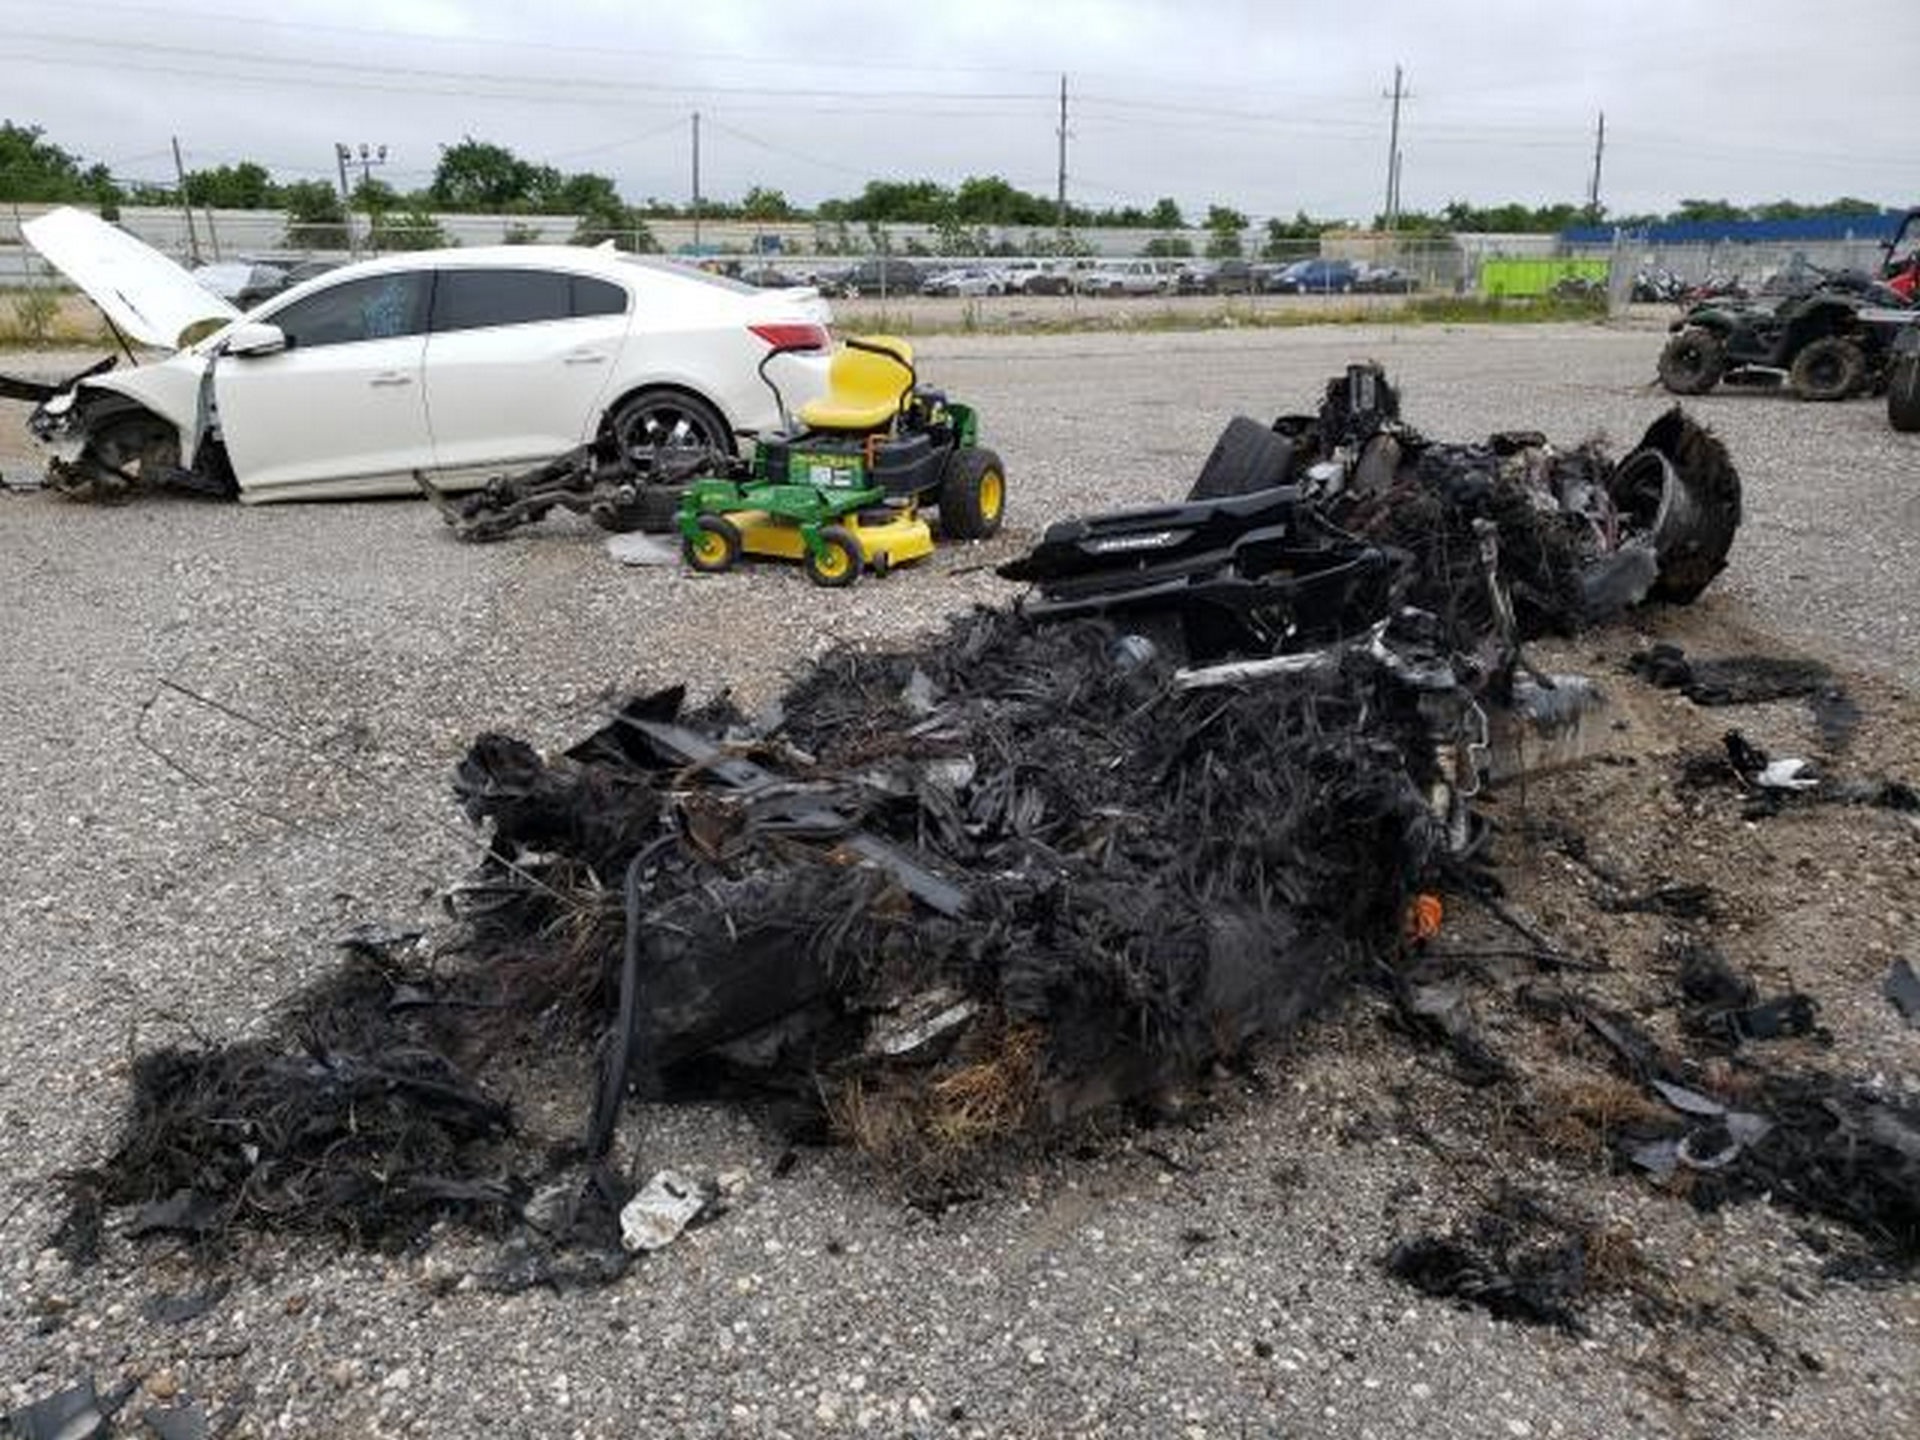 Siêu xe McLaren bị cháy thành tro vẫn được rao bán - 9